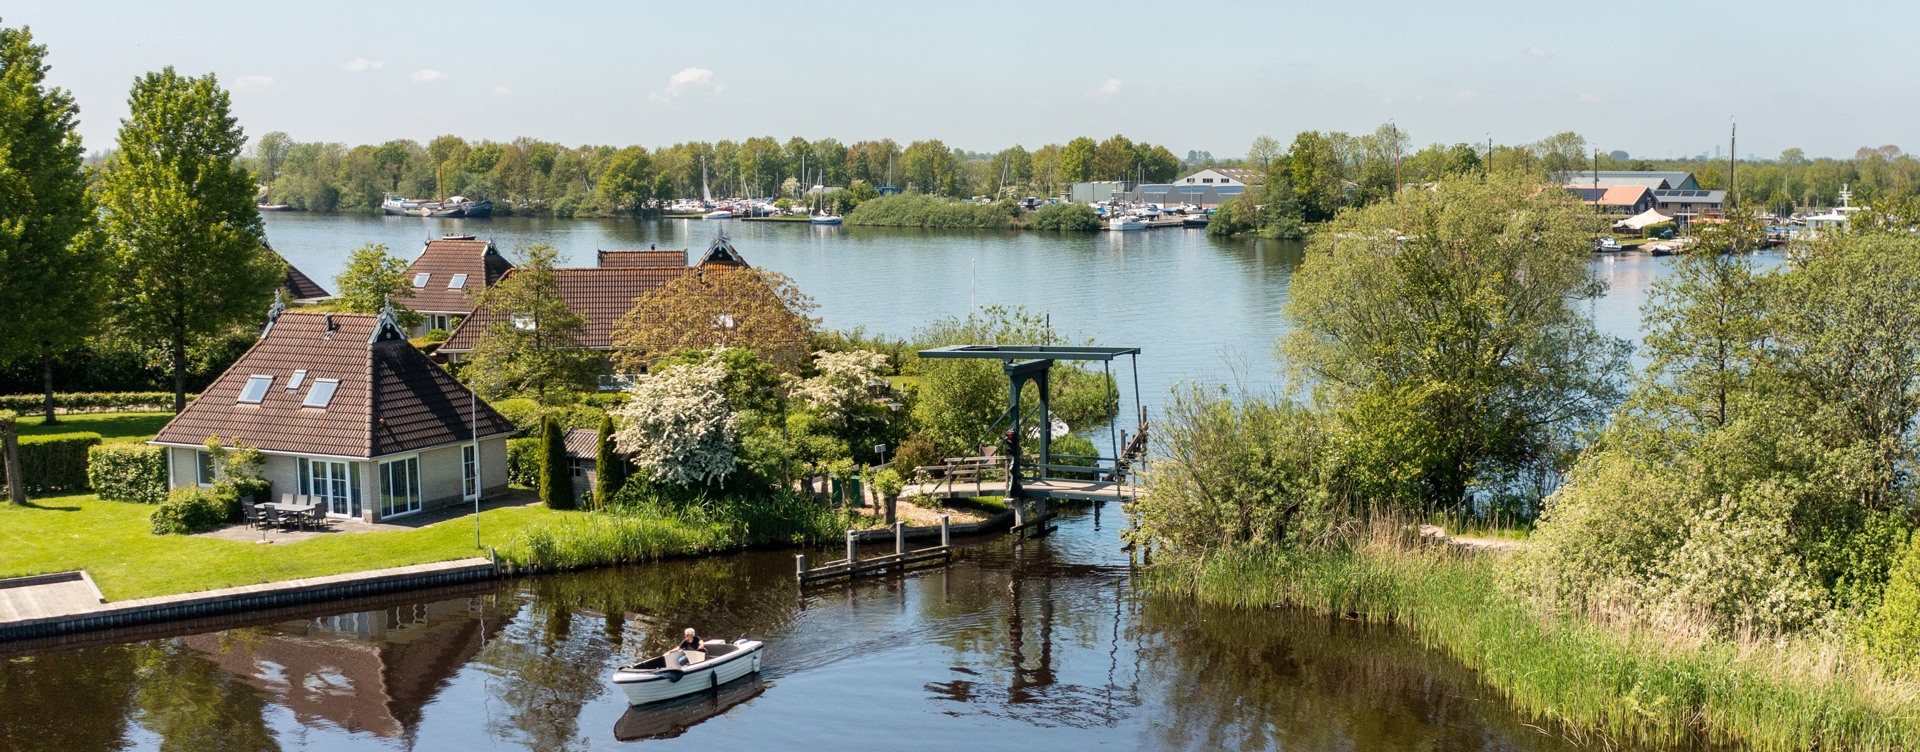 Buchen Sie jetzt Ihren Urlaub in Friesland